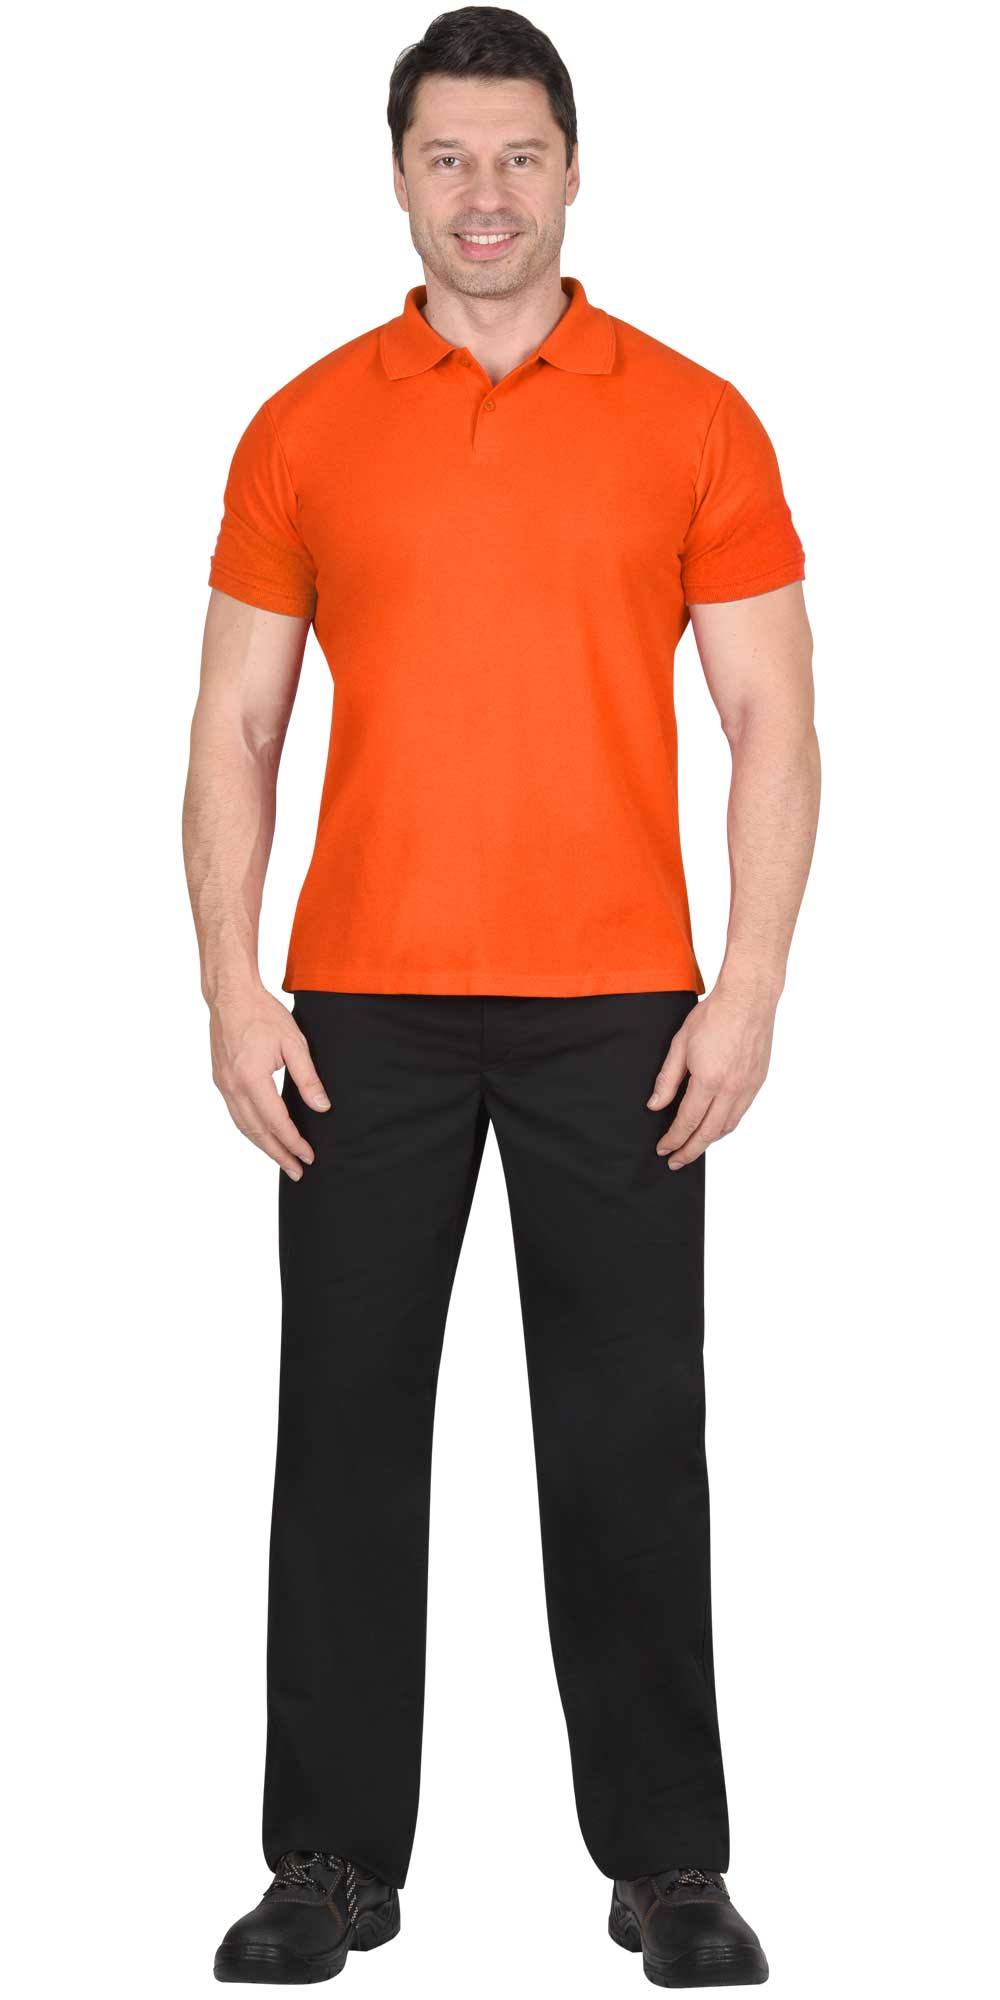 Рубашка-поло мужская, рукав короткий, цвет: оранжевый, плотность 180г/кв.м